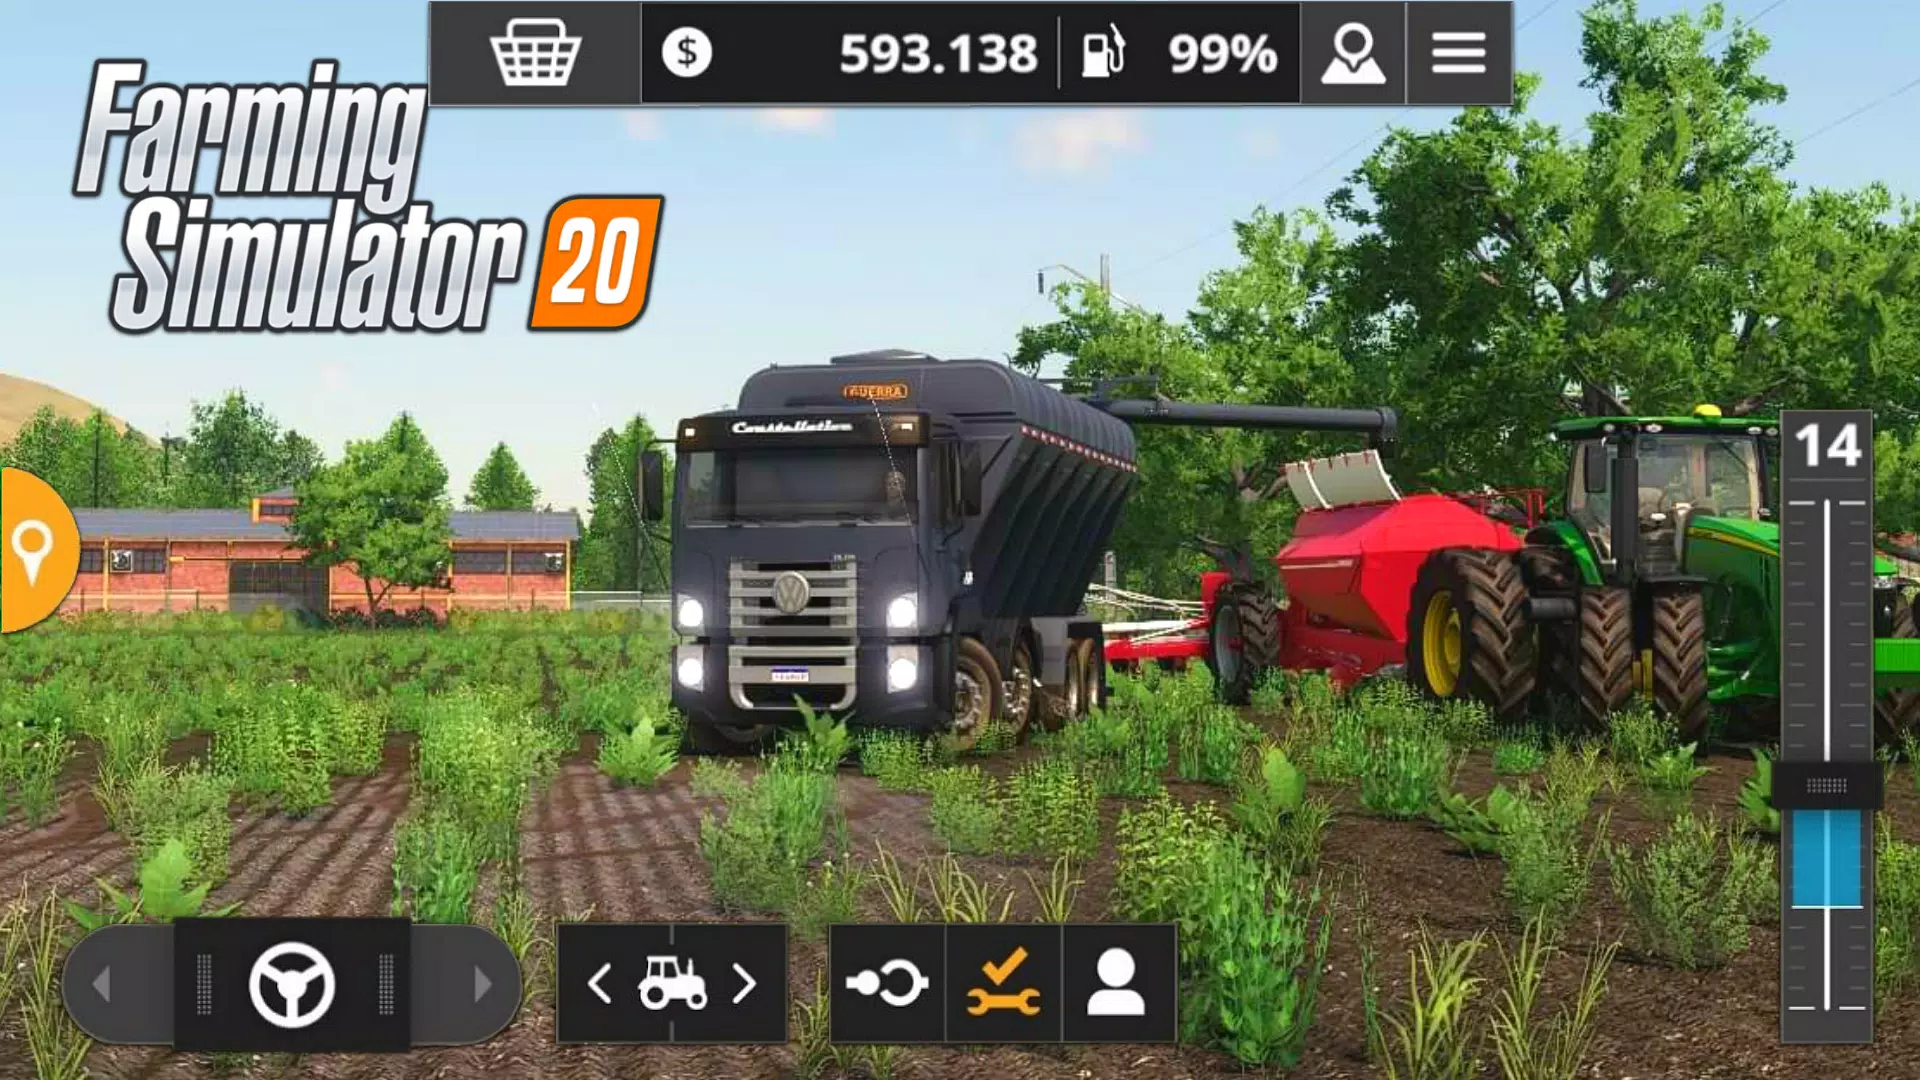 Download do APK de jogos de trator de fazenda para Android